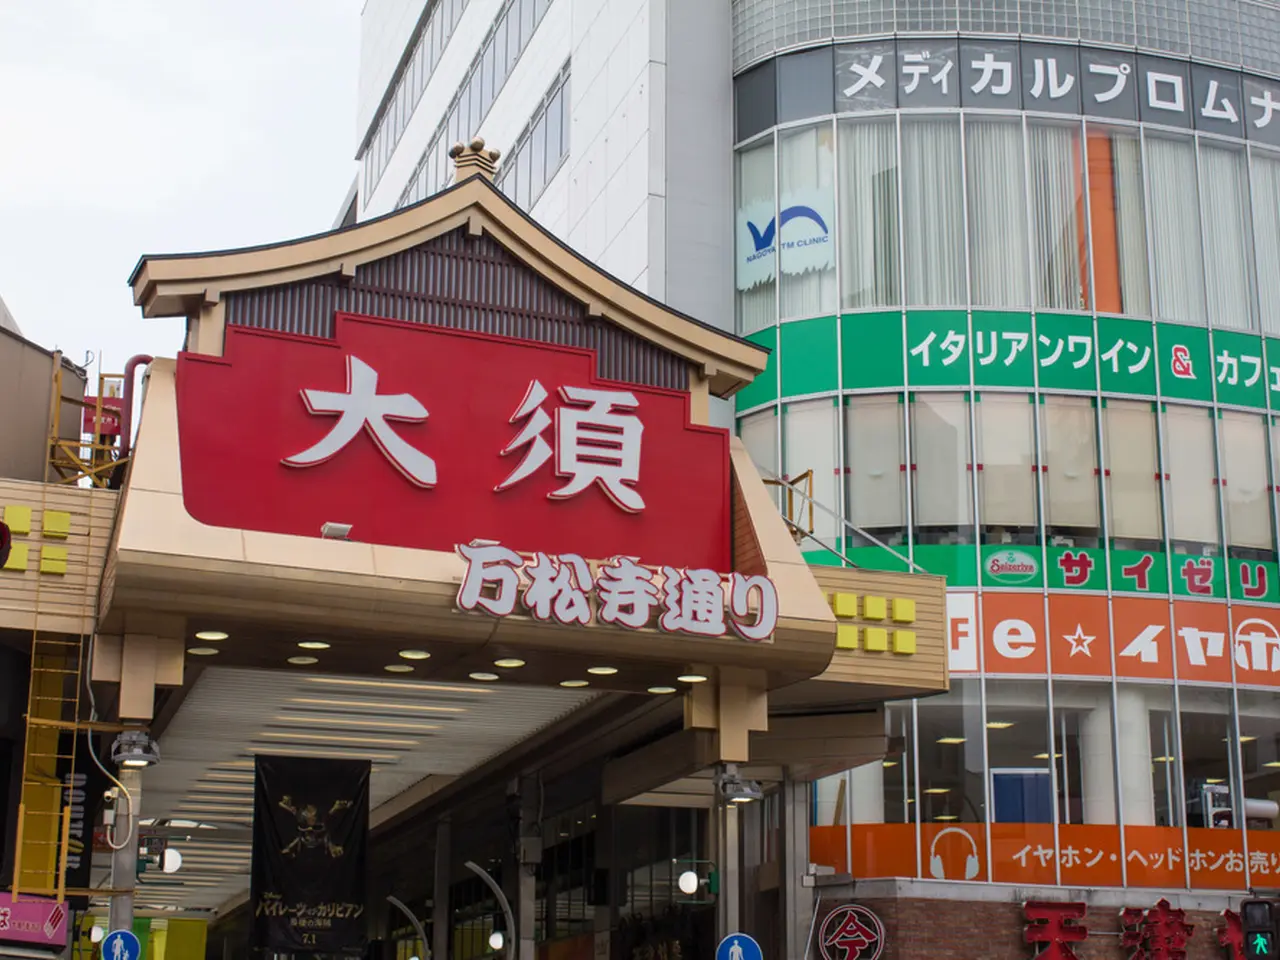 大須商店街の楽しみ方完全ガイド 観光やデートにおすすめの情報や周辺情報も満載 Holiday ホリデー